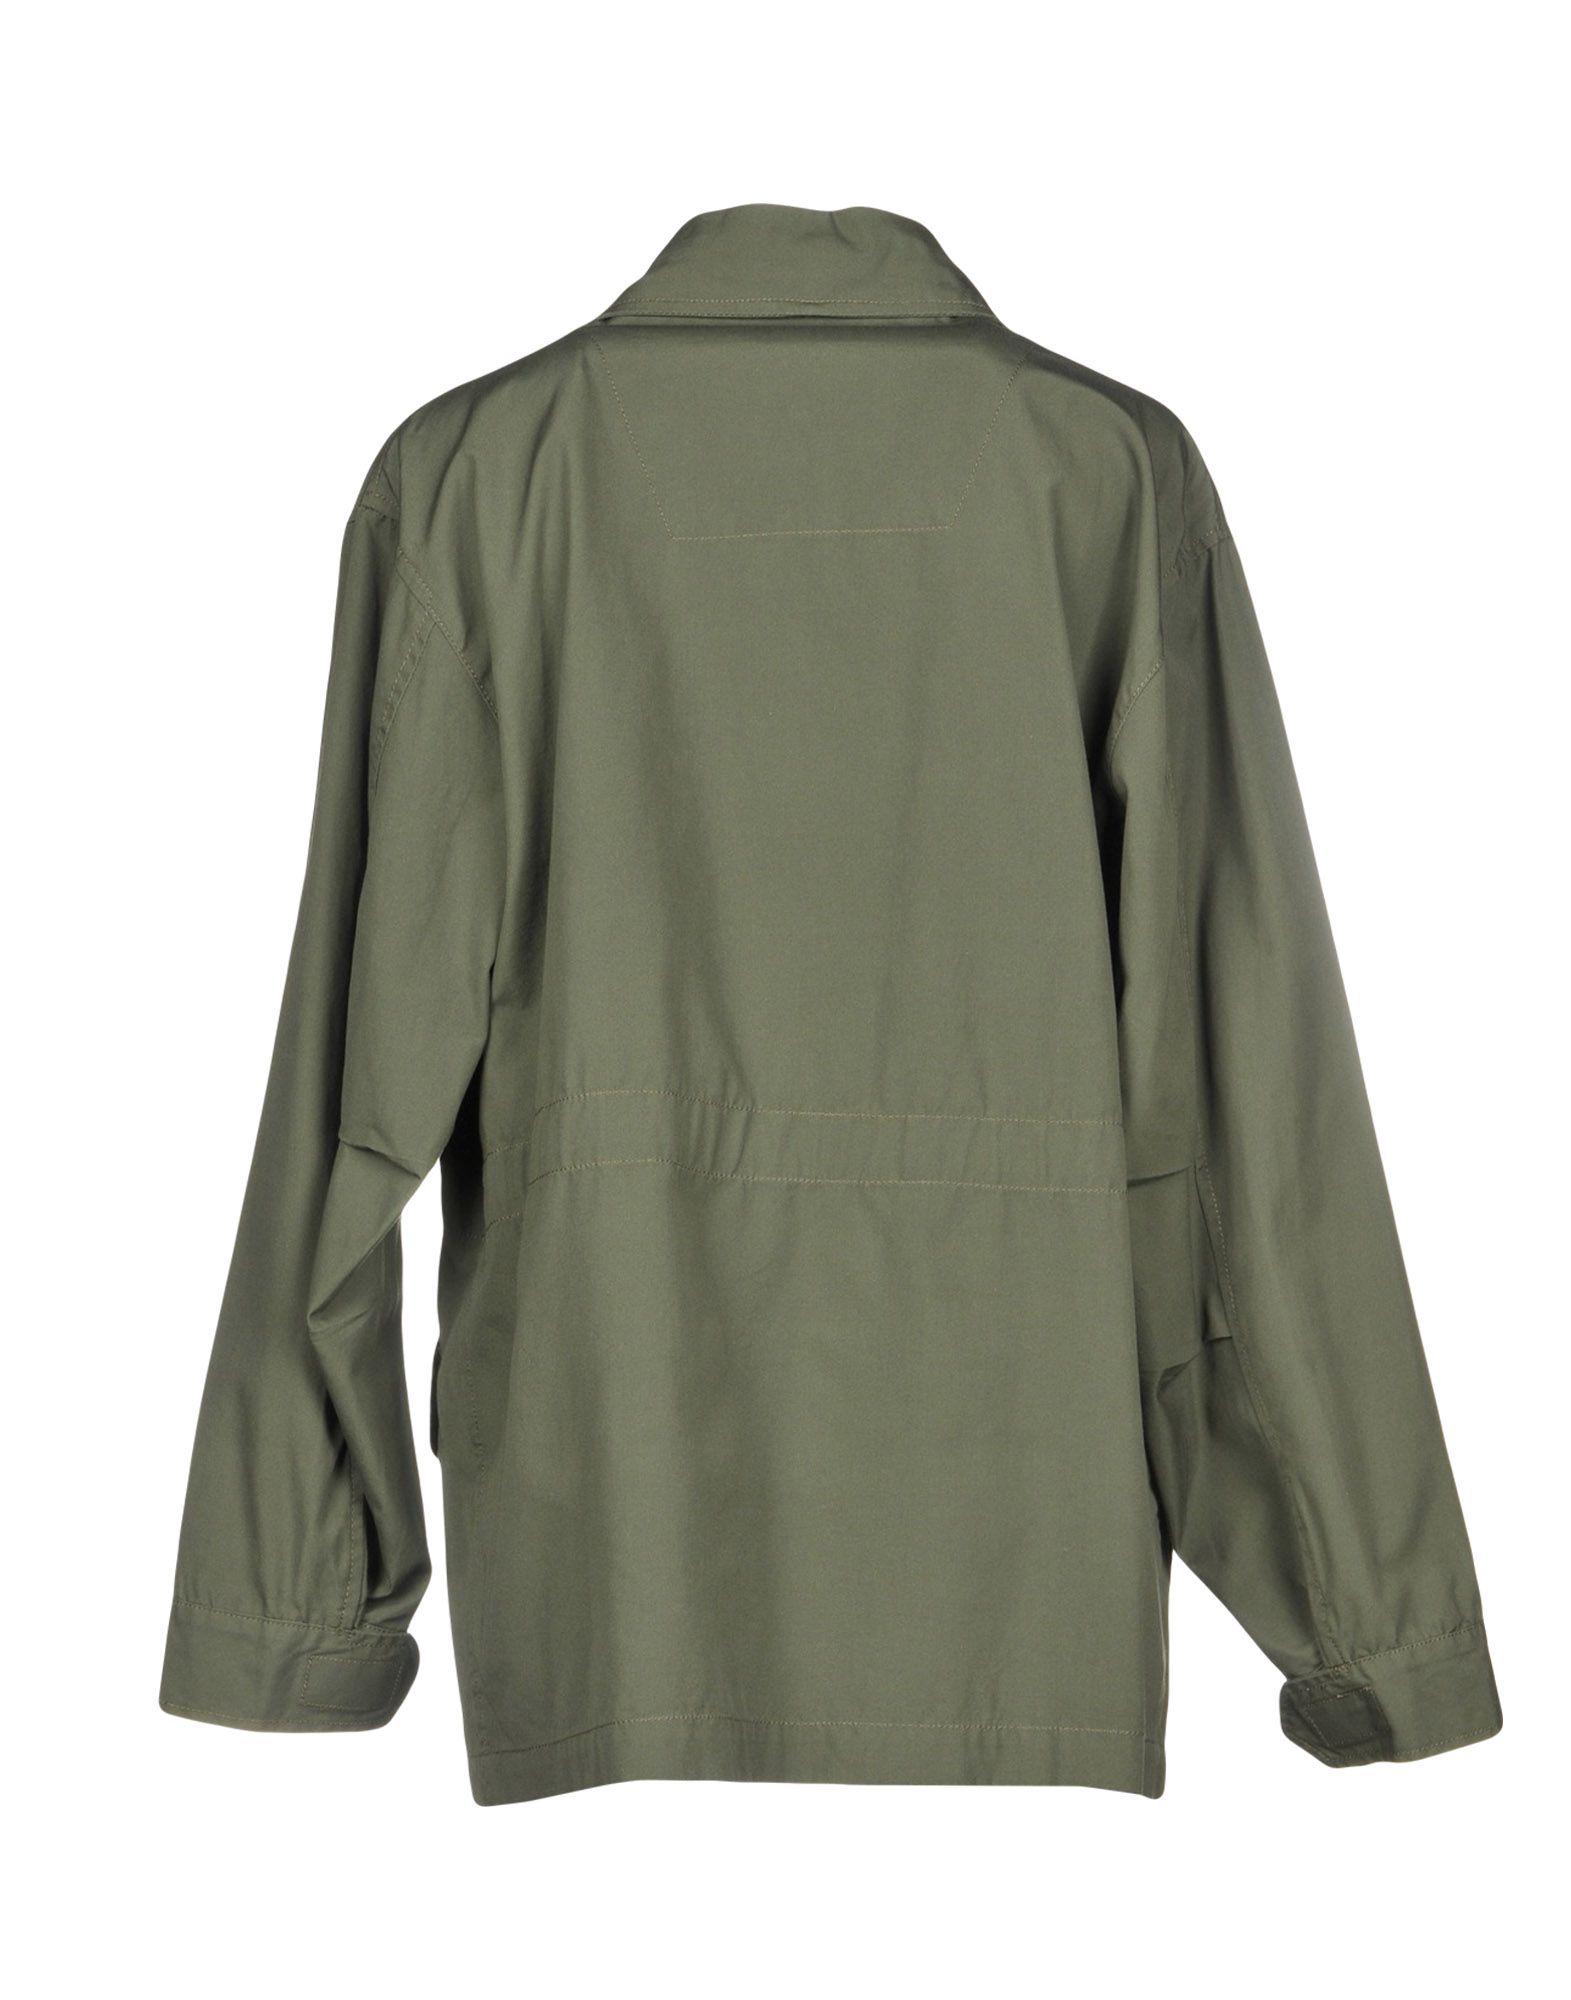 BELFE Jacket in Military Green (Green) - Lyst